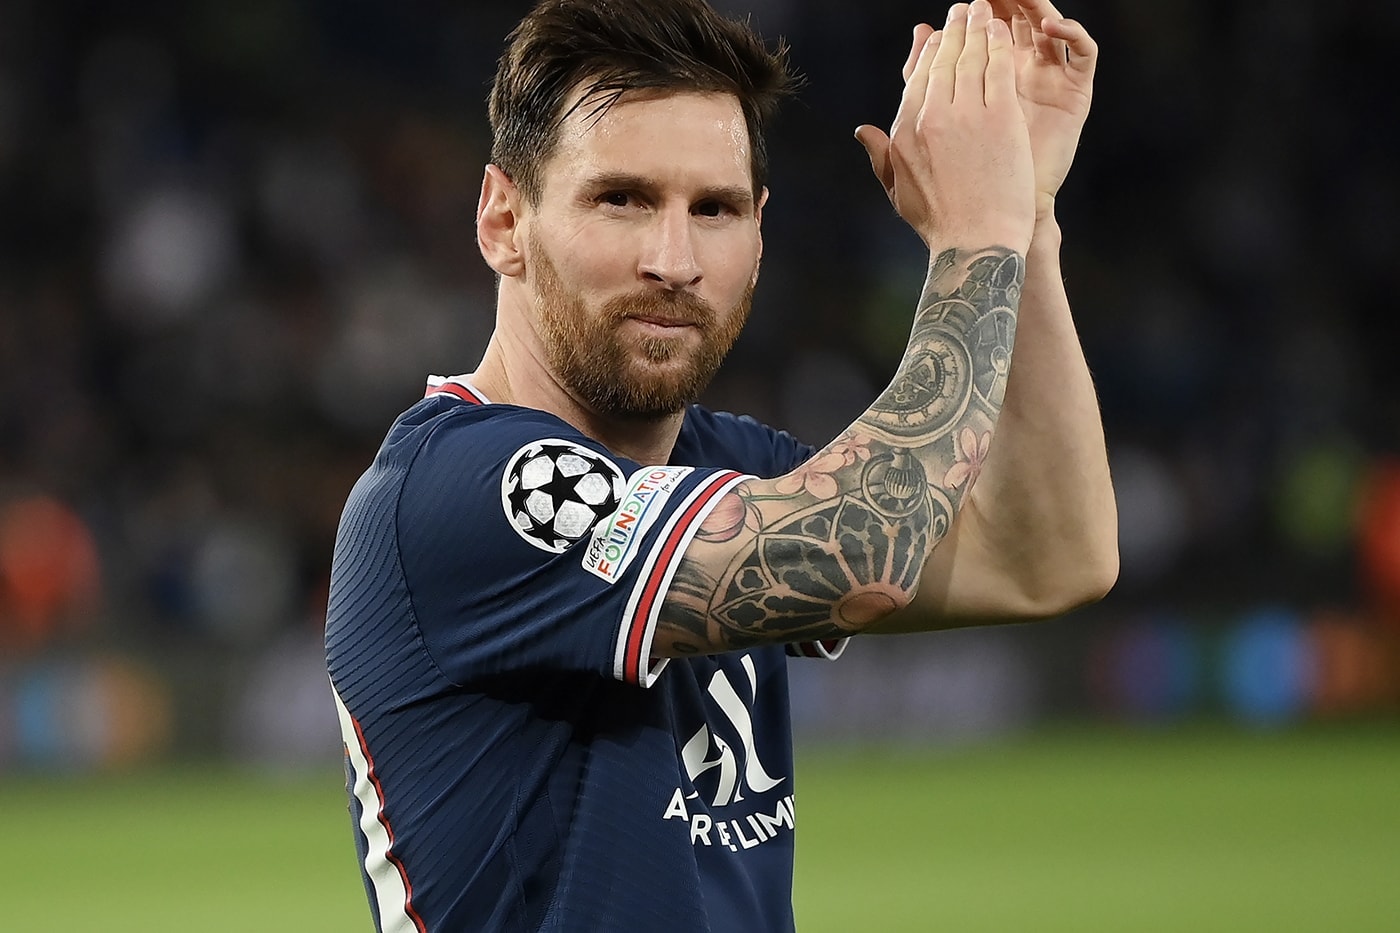 消息称 Lionel Messi 即将前往美国加盟 Inter Miami